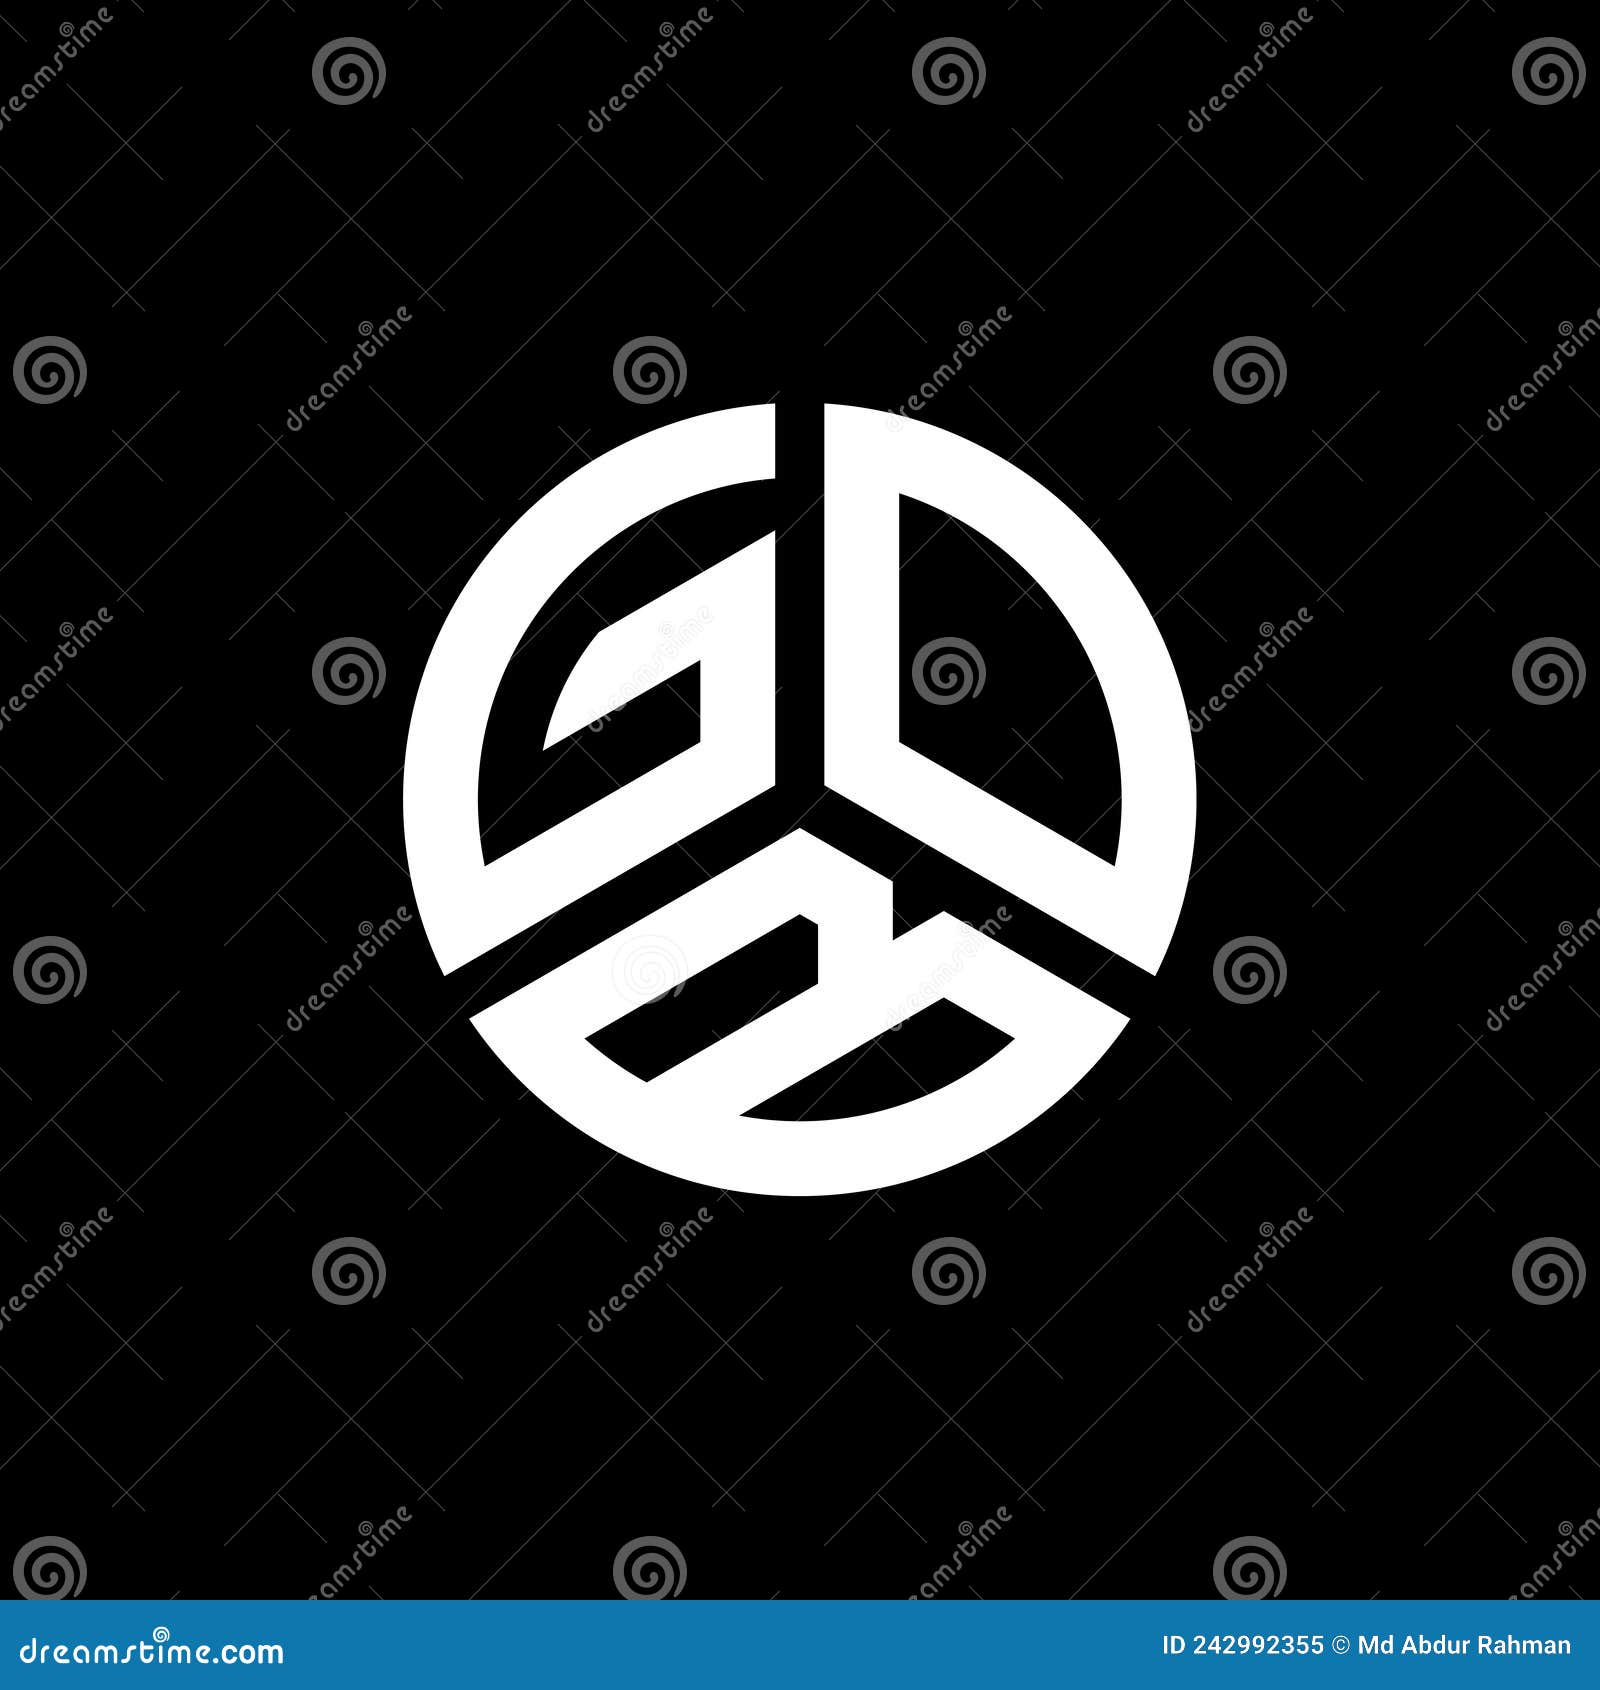 gob letter logo  on white background. gob creative initials letter logo concept. gob letter 